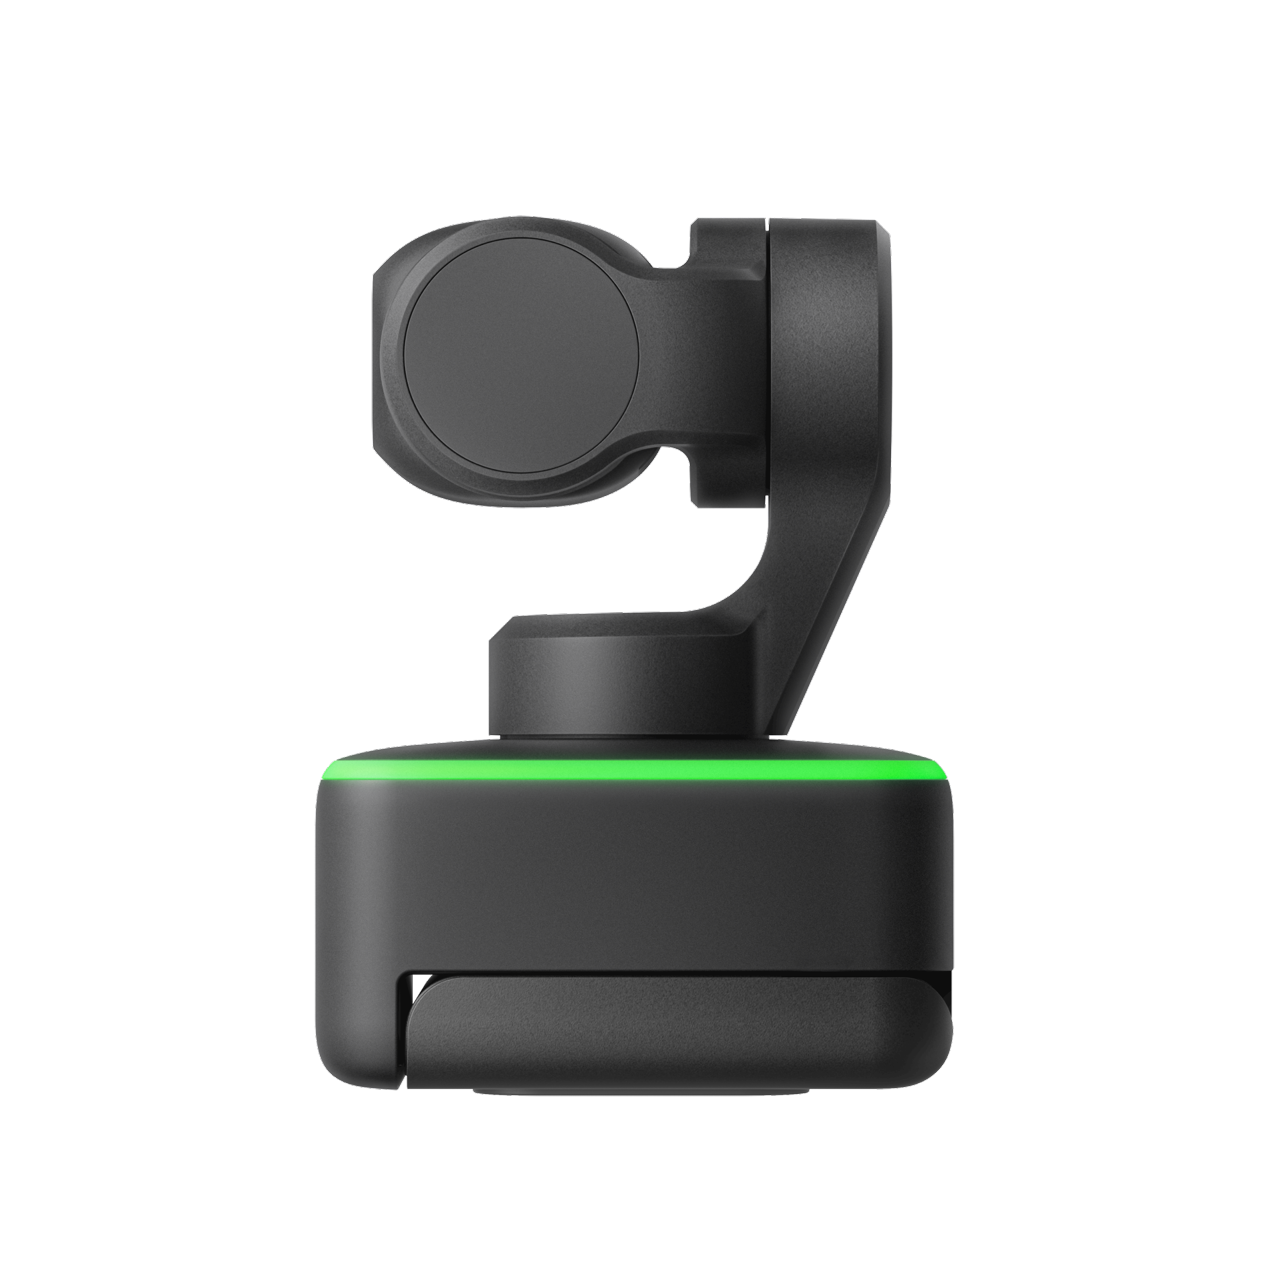 Buy Link - AI-Powered 4K Webcam - Insta360